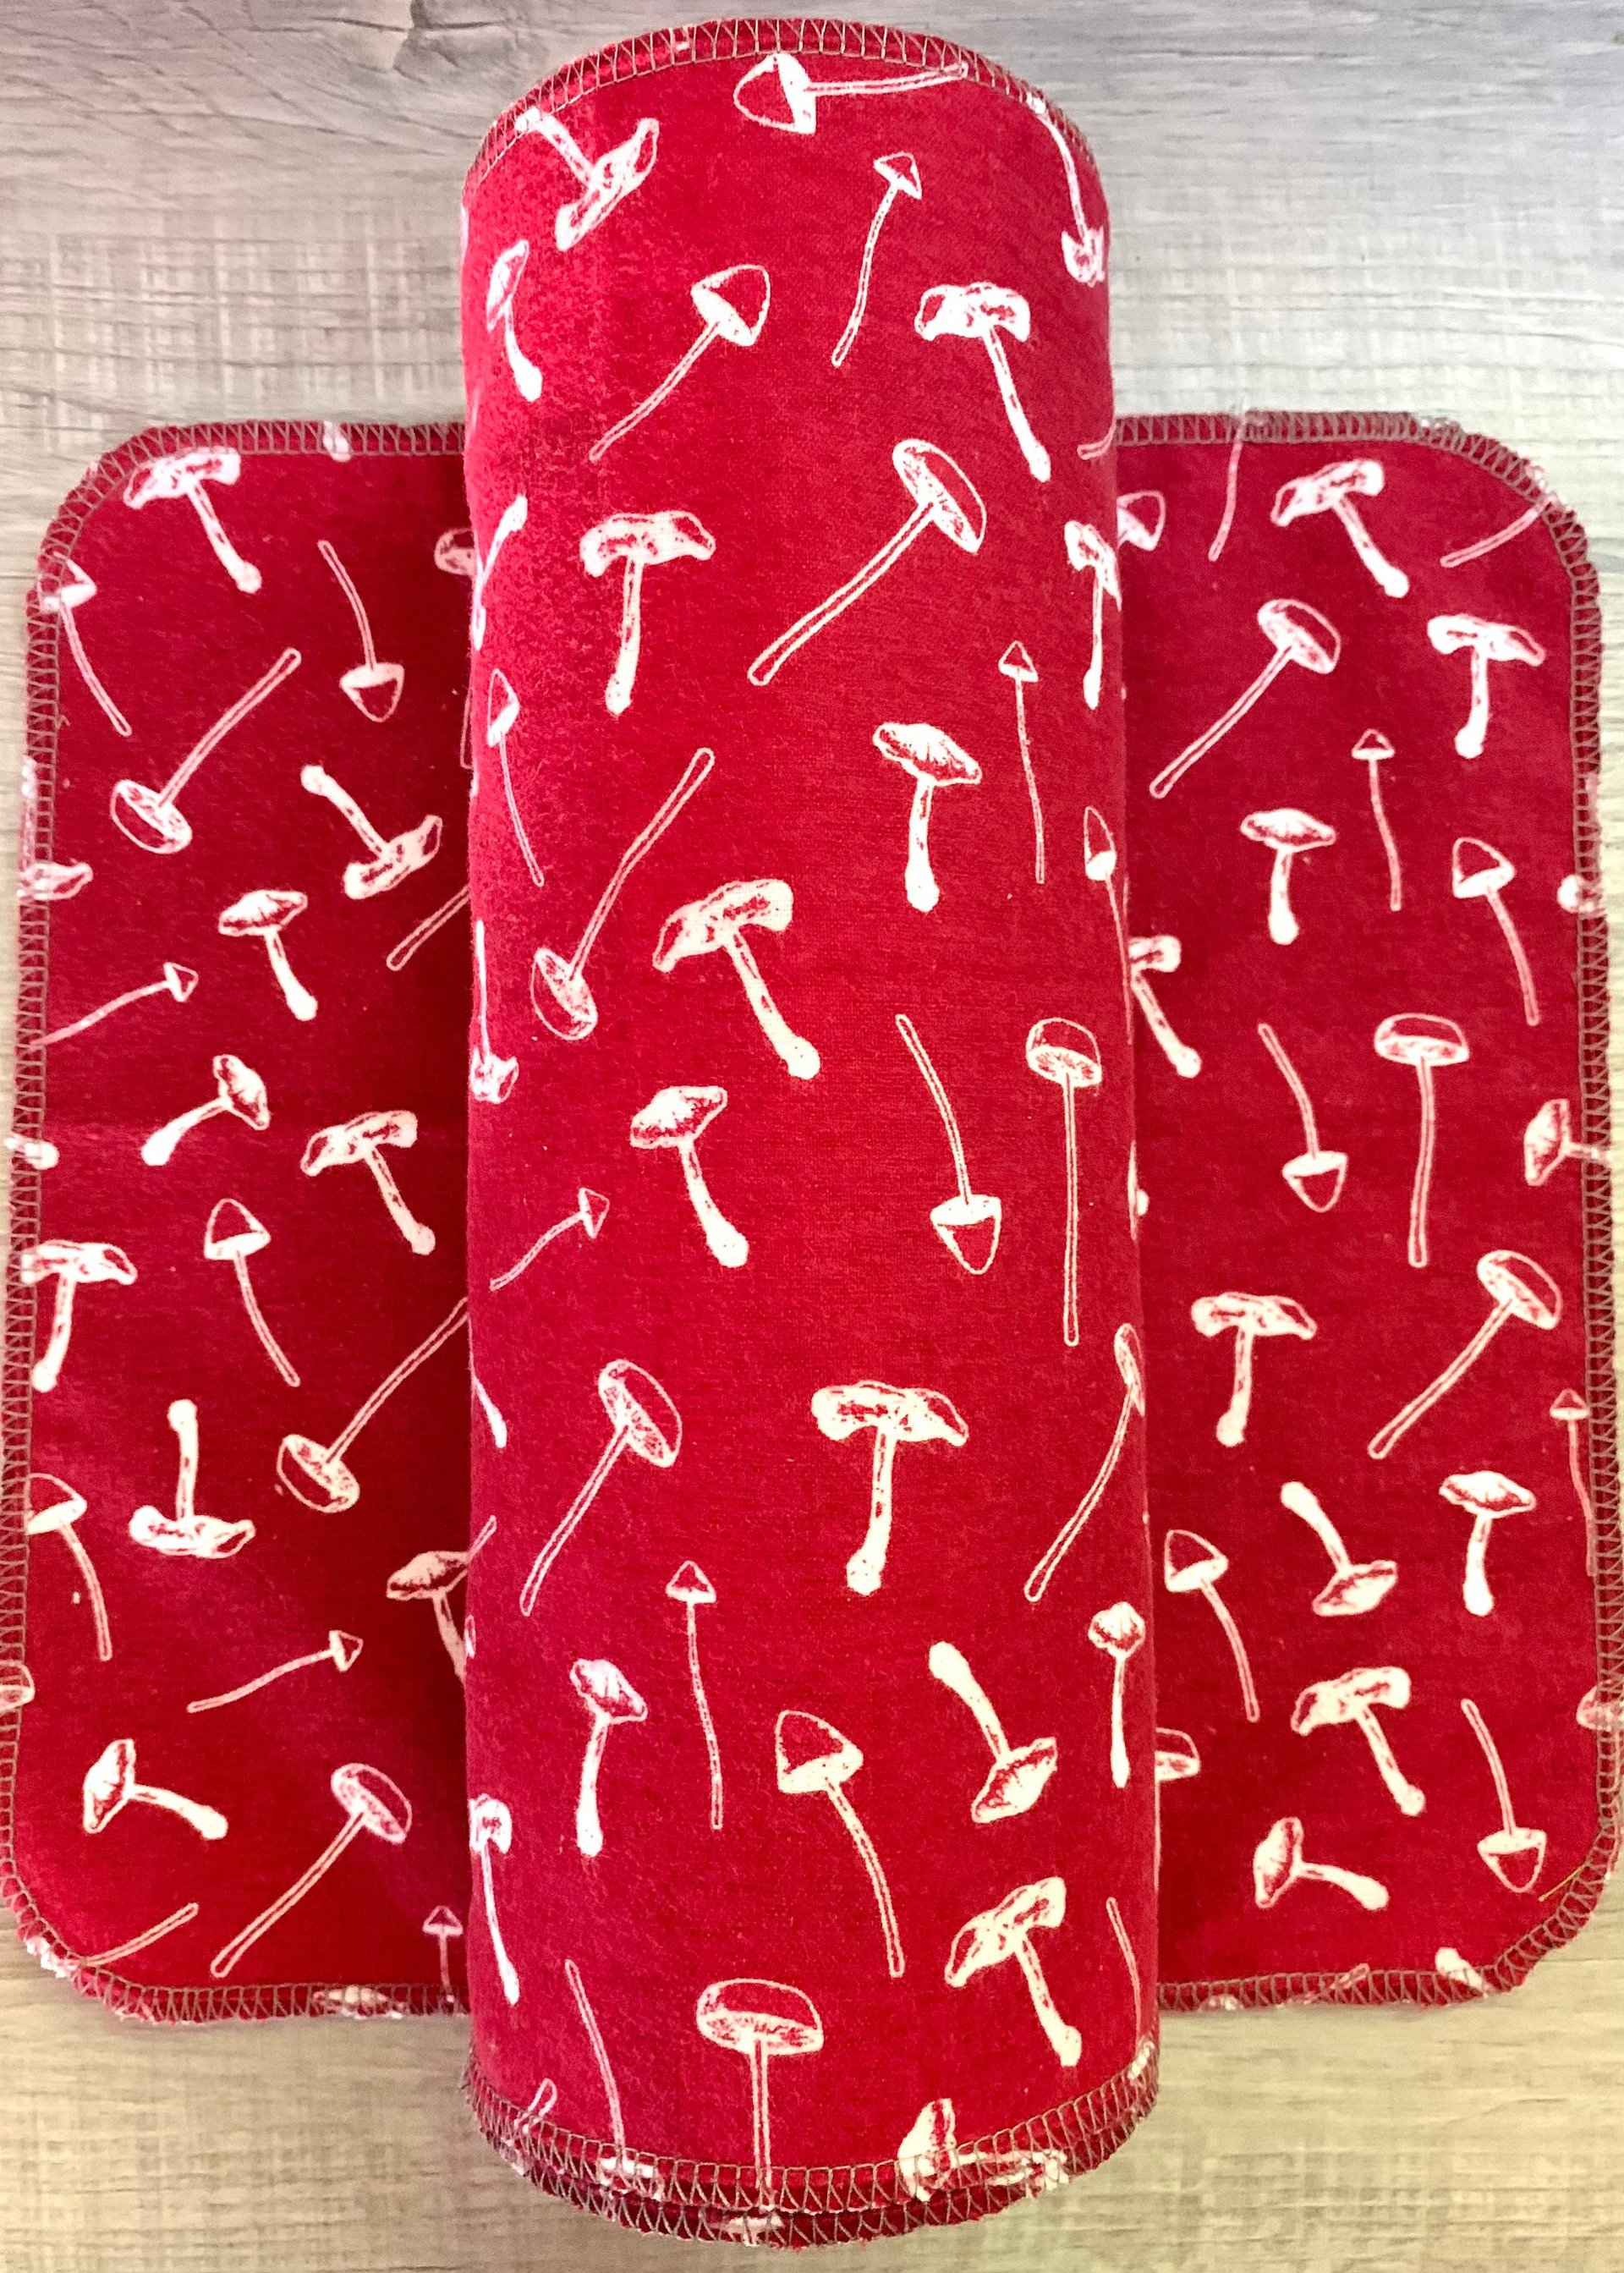 Mushrooms on burgundy Paperless Towels